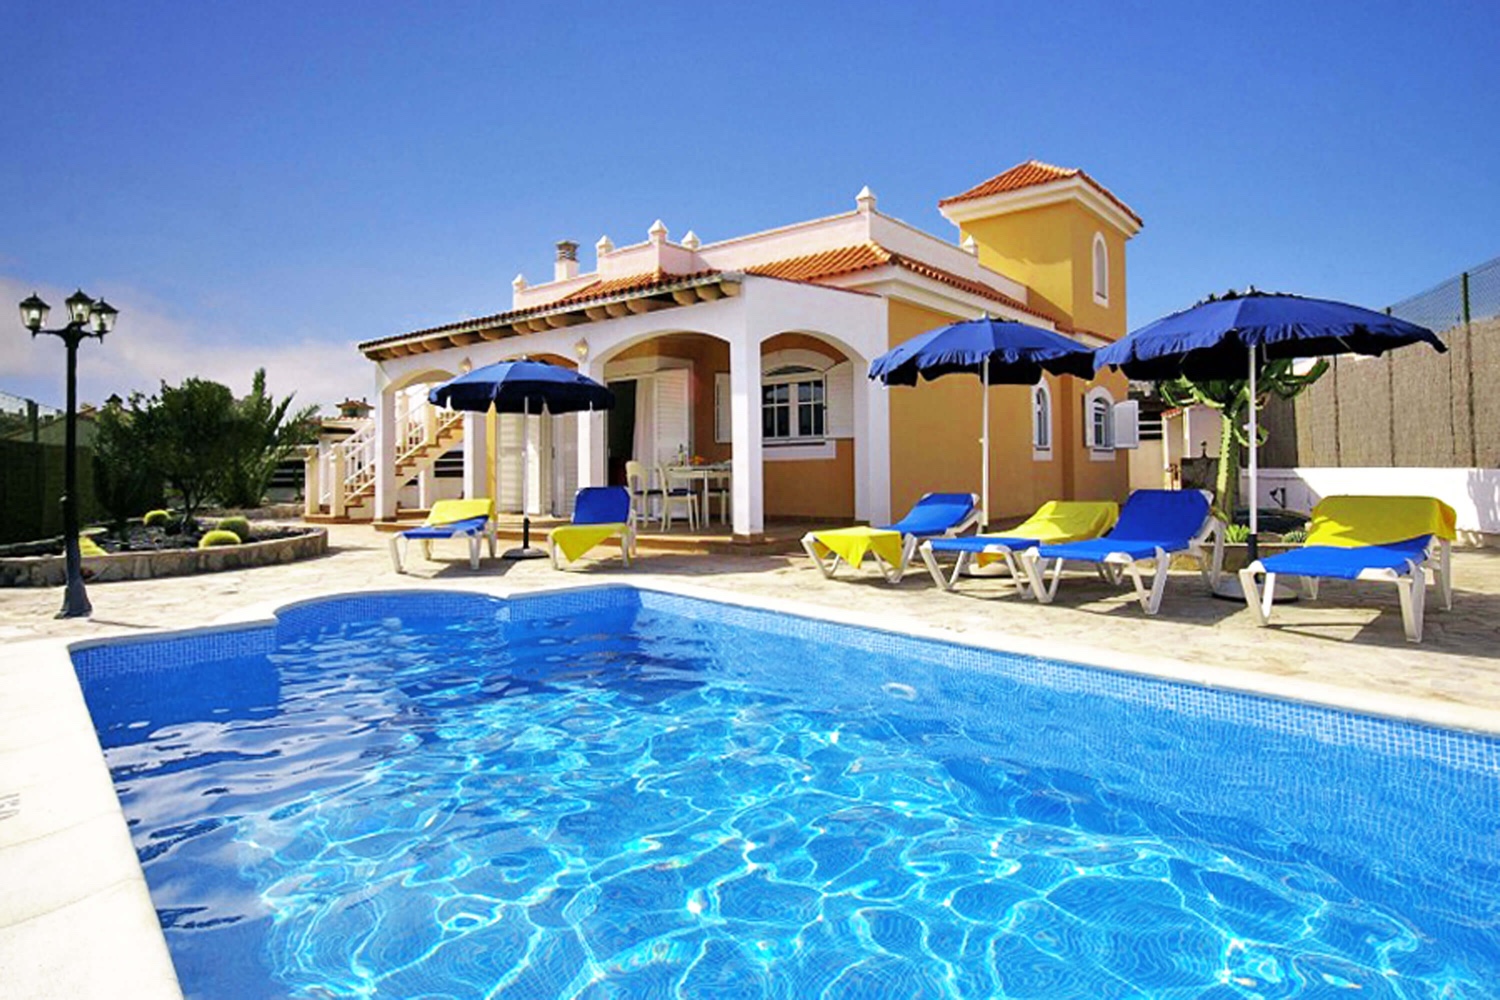 Elegante spansk stil villaer med tre soverom og privat basseng ved siden av velstelte golfbanen i Caleta de Fuste